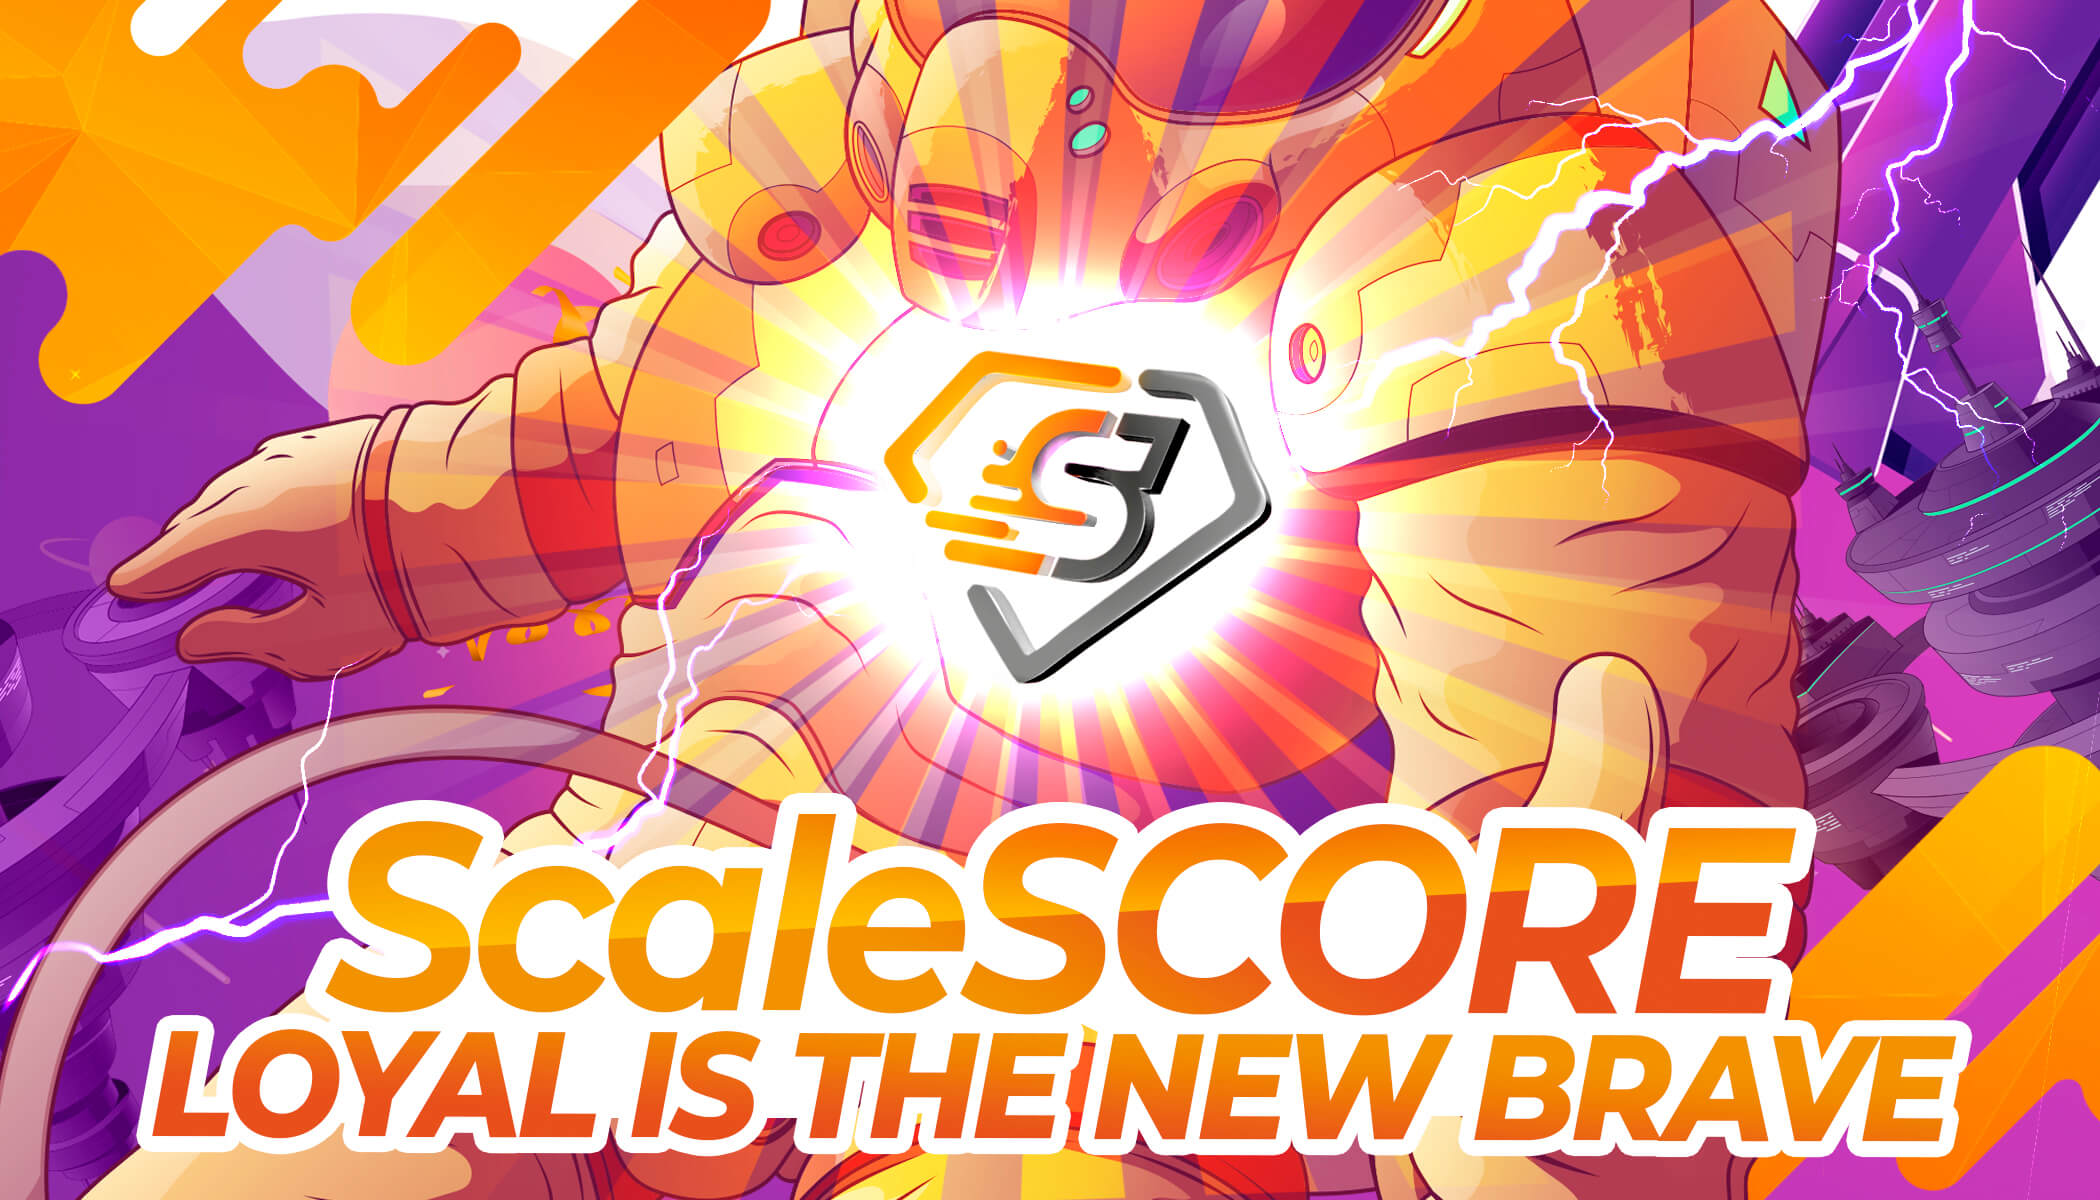 ScaleSCORE loyal preview